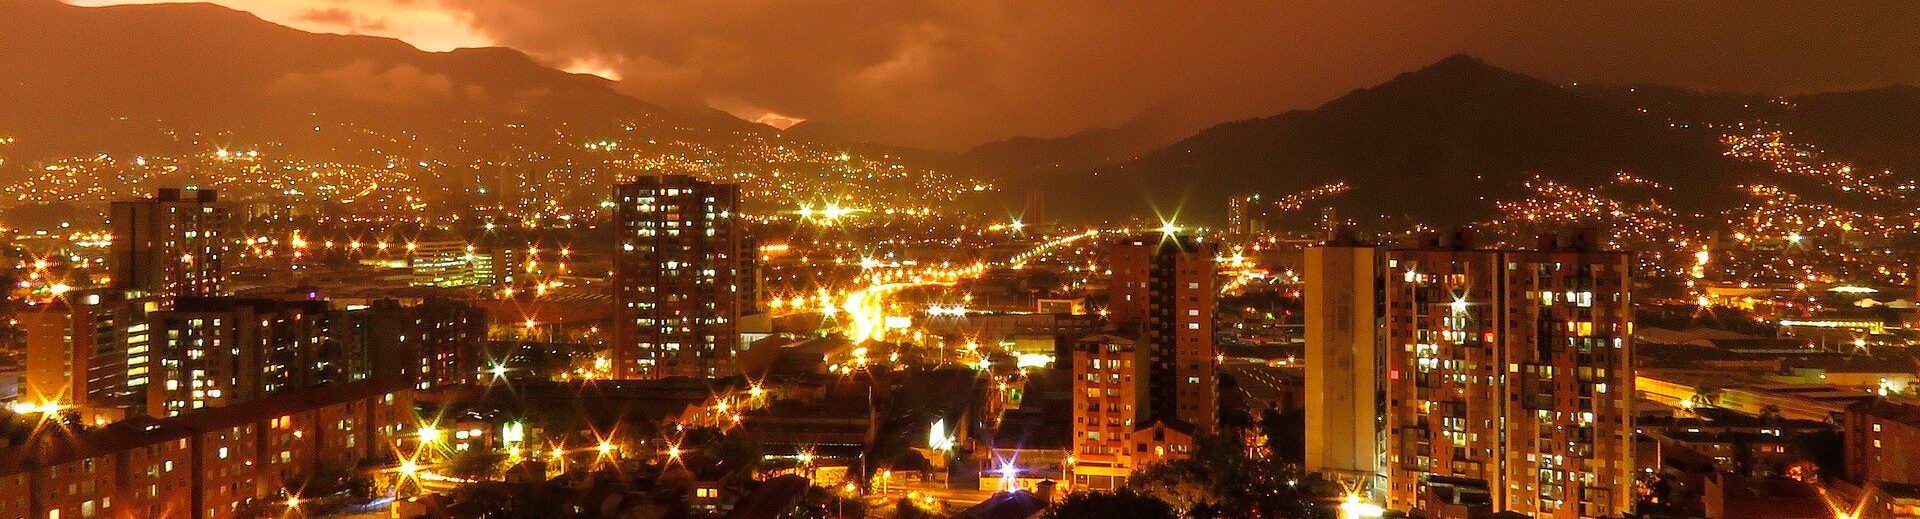 Contaminación ambiental en Medellín: acciones y soluciones